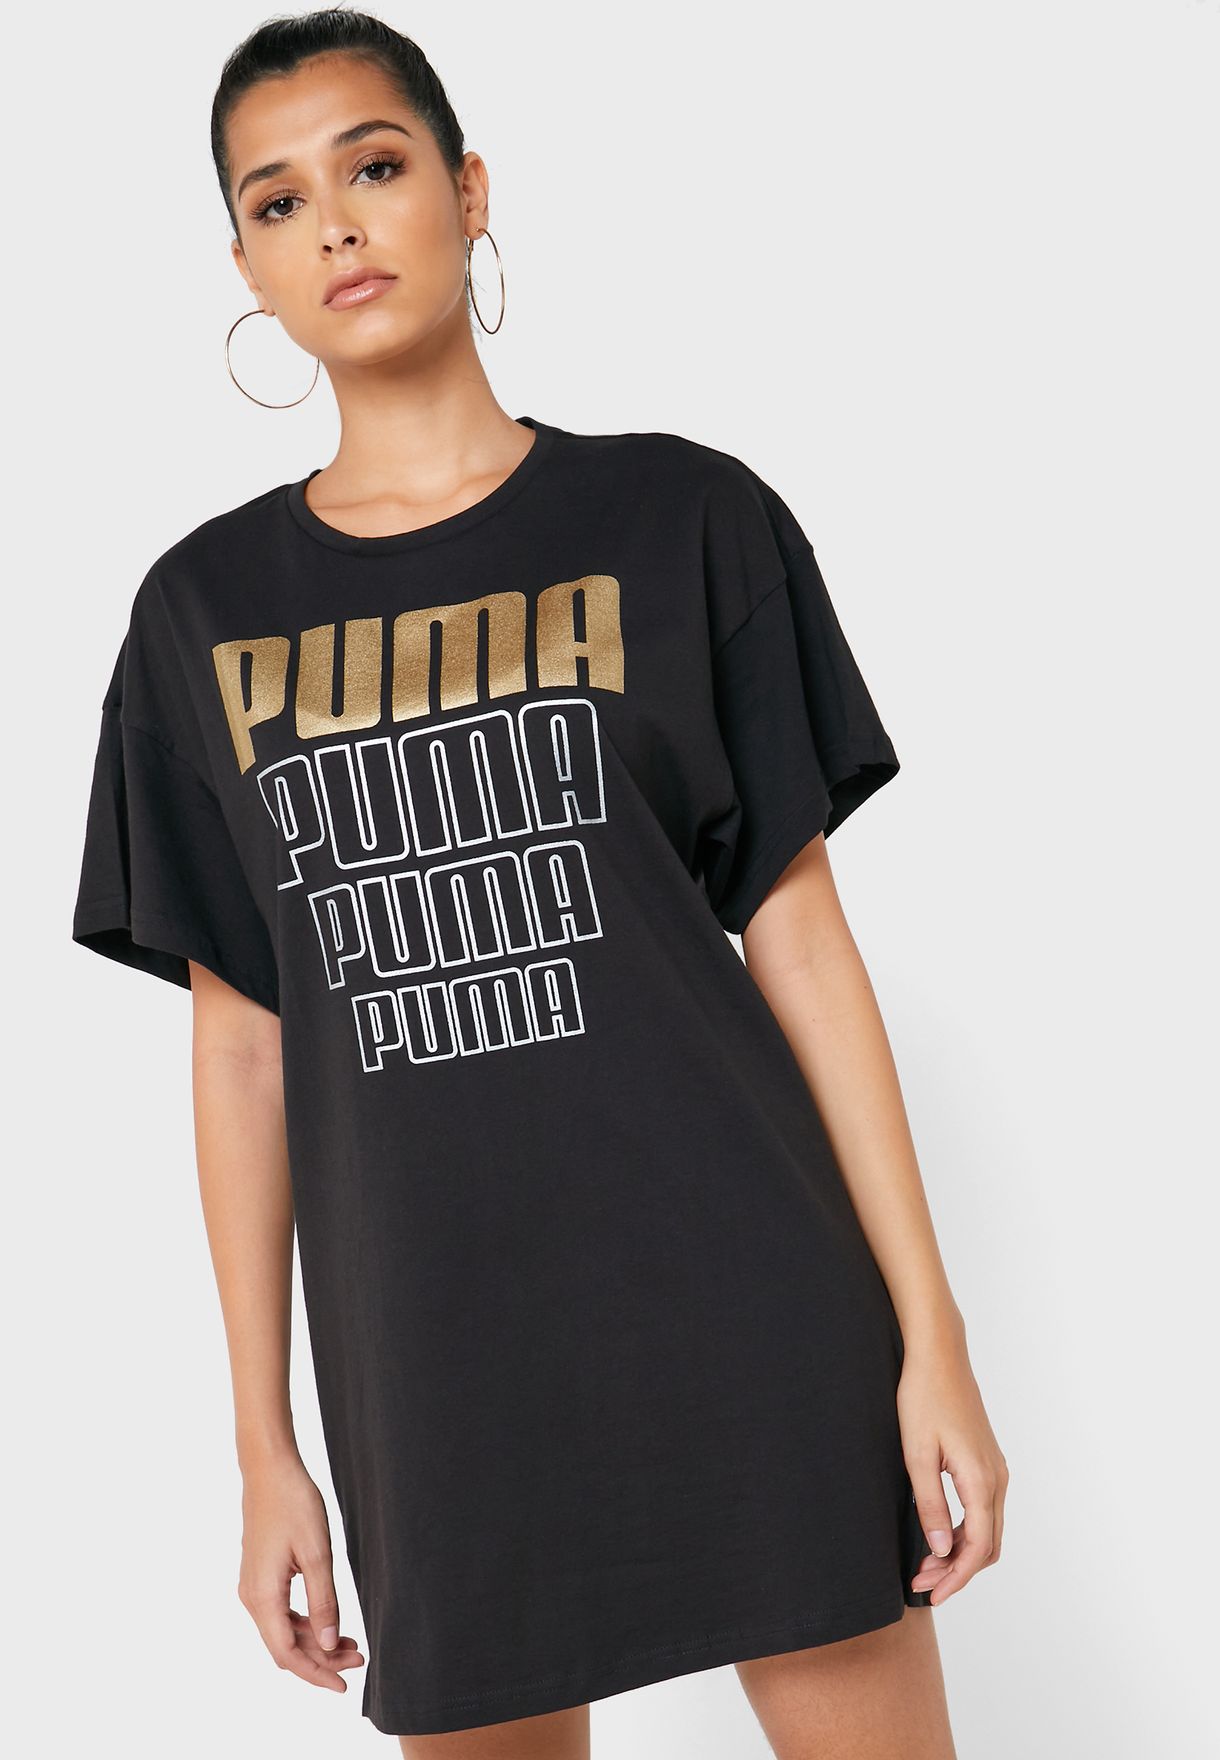 puma t shirt dress